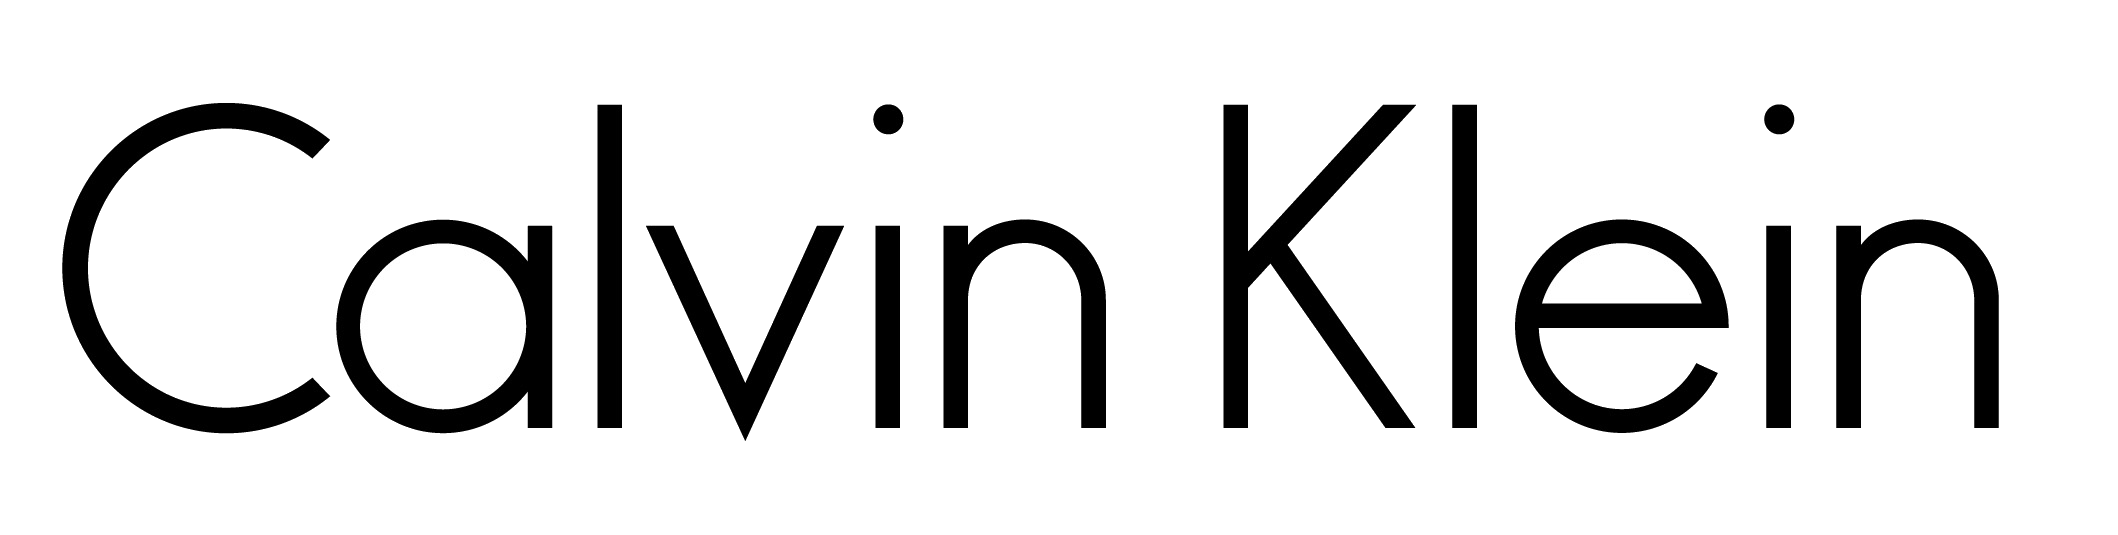 Calvin Klein Logo PNG - 98767